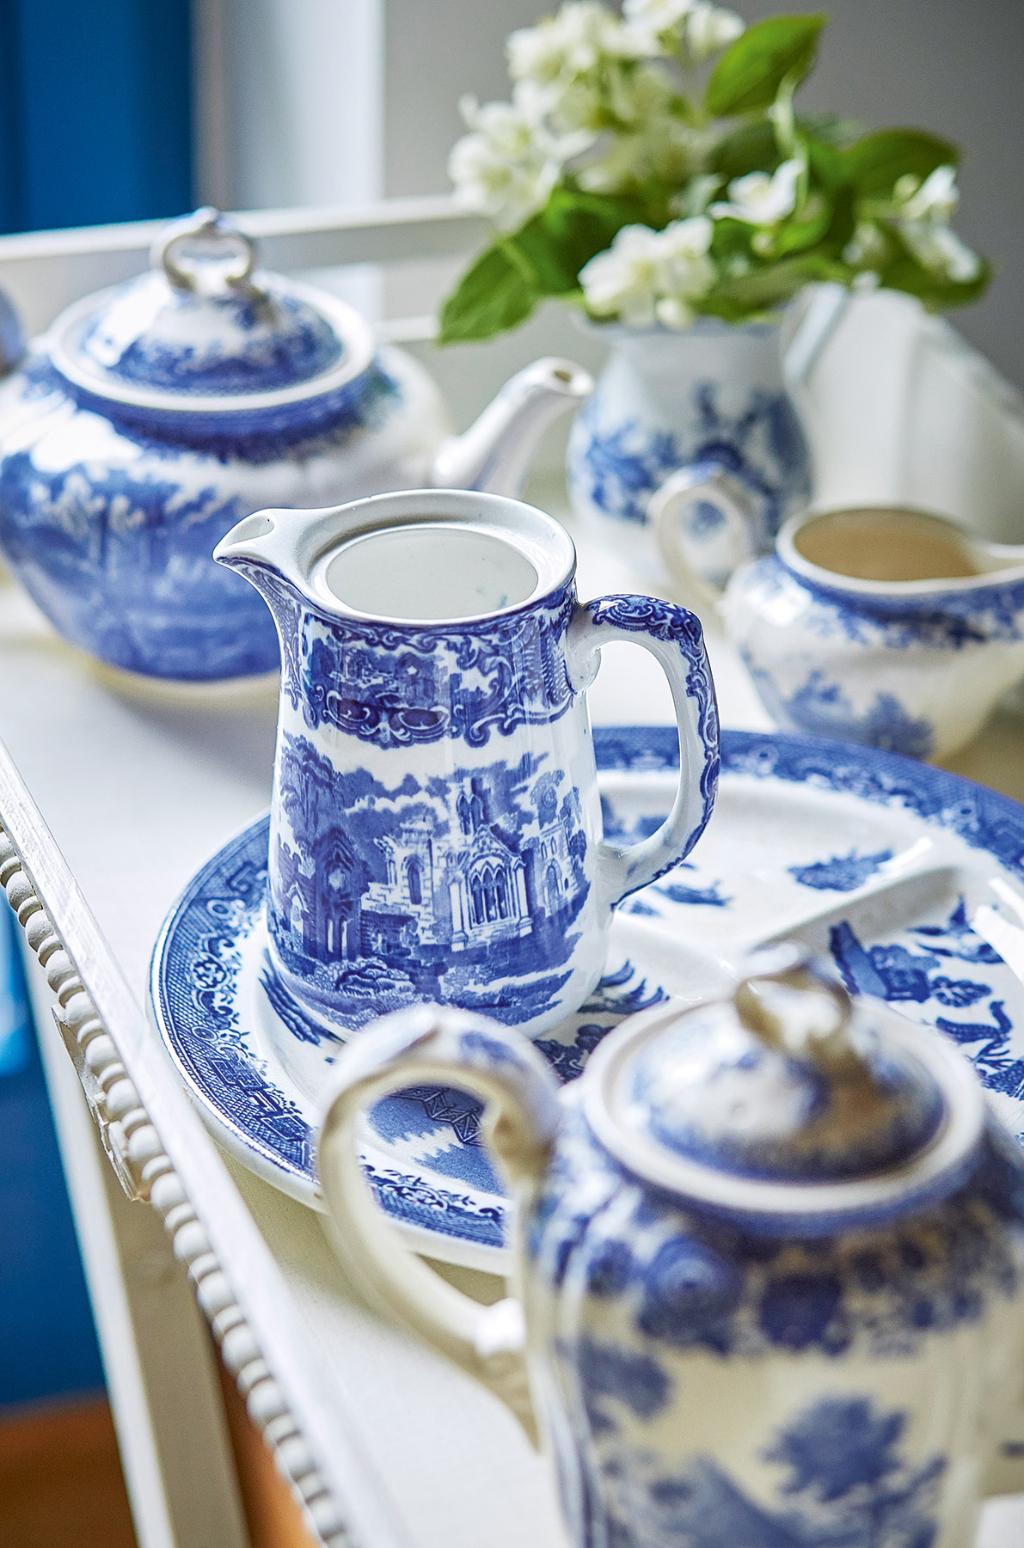  Kolekcja porcelany, oczywiście z dominantą błękitu. (Fot. Celestyna Król)